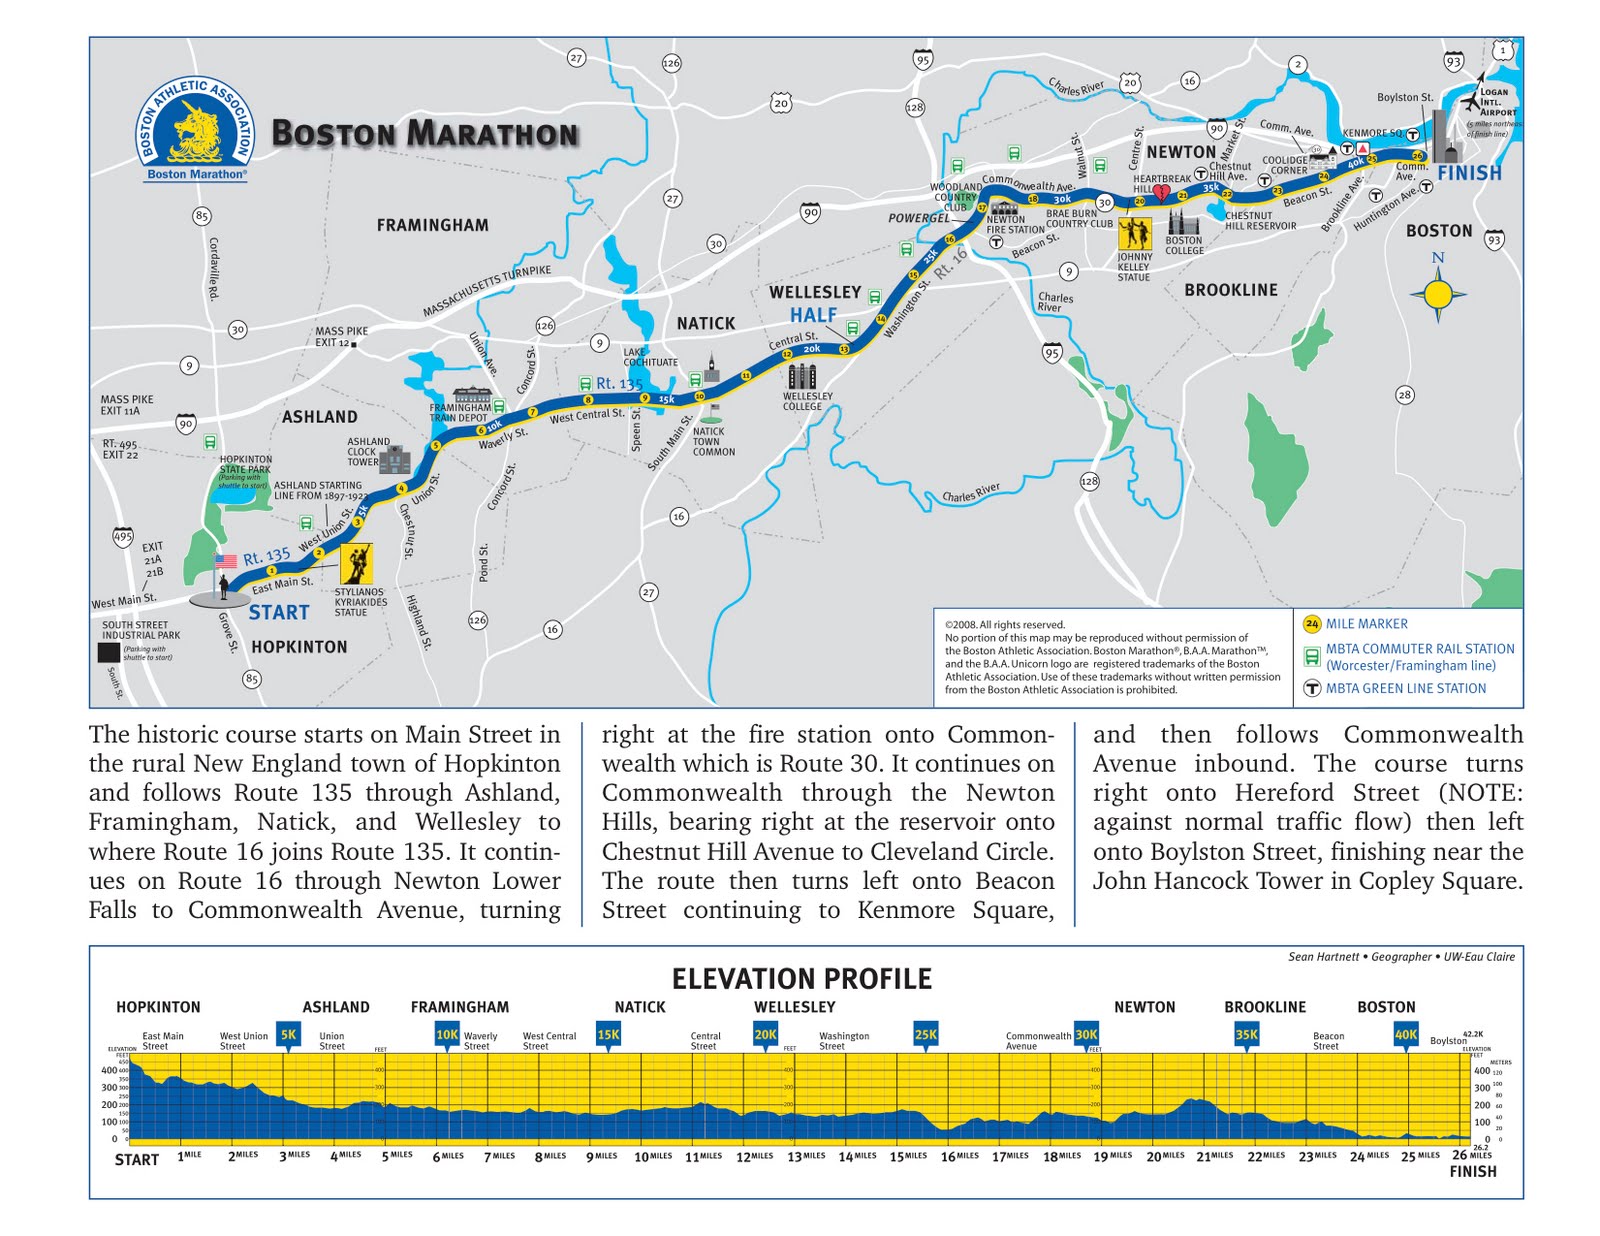 RunTri Boston Marathon Course Video and Map